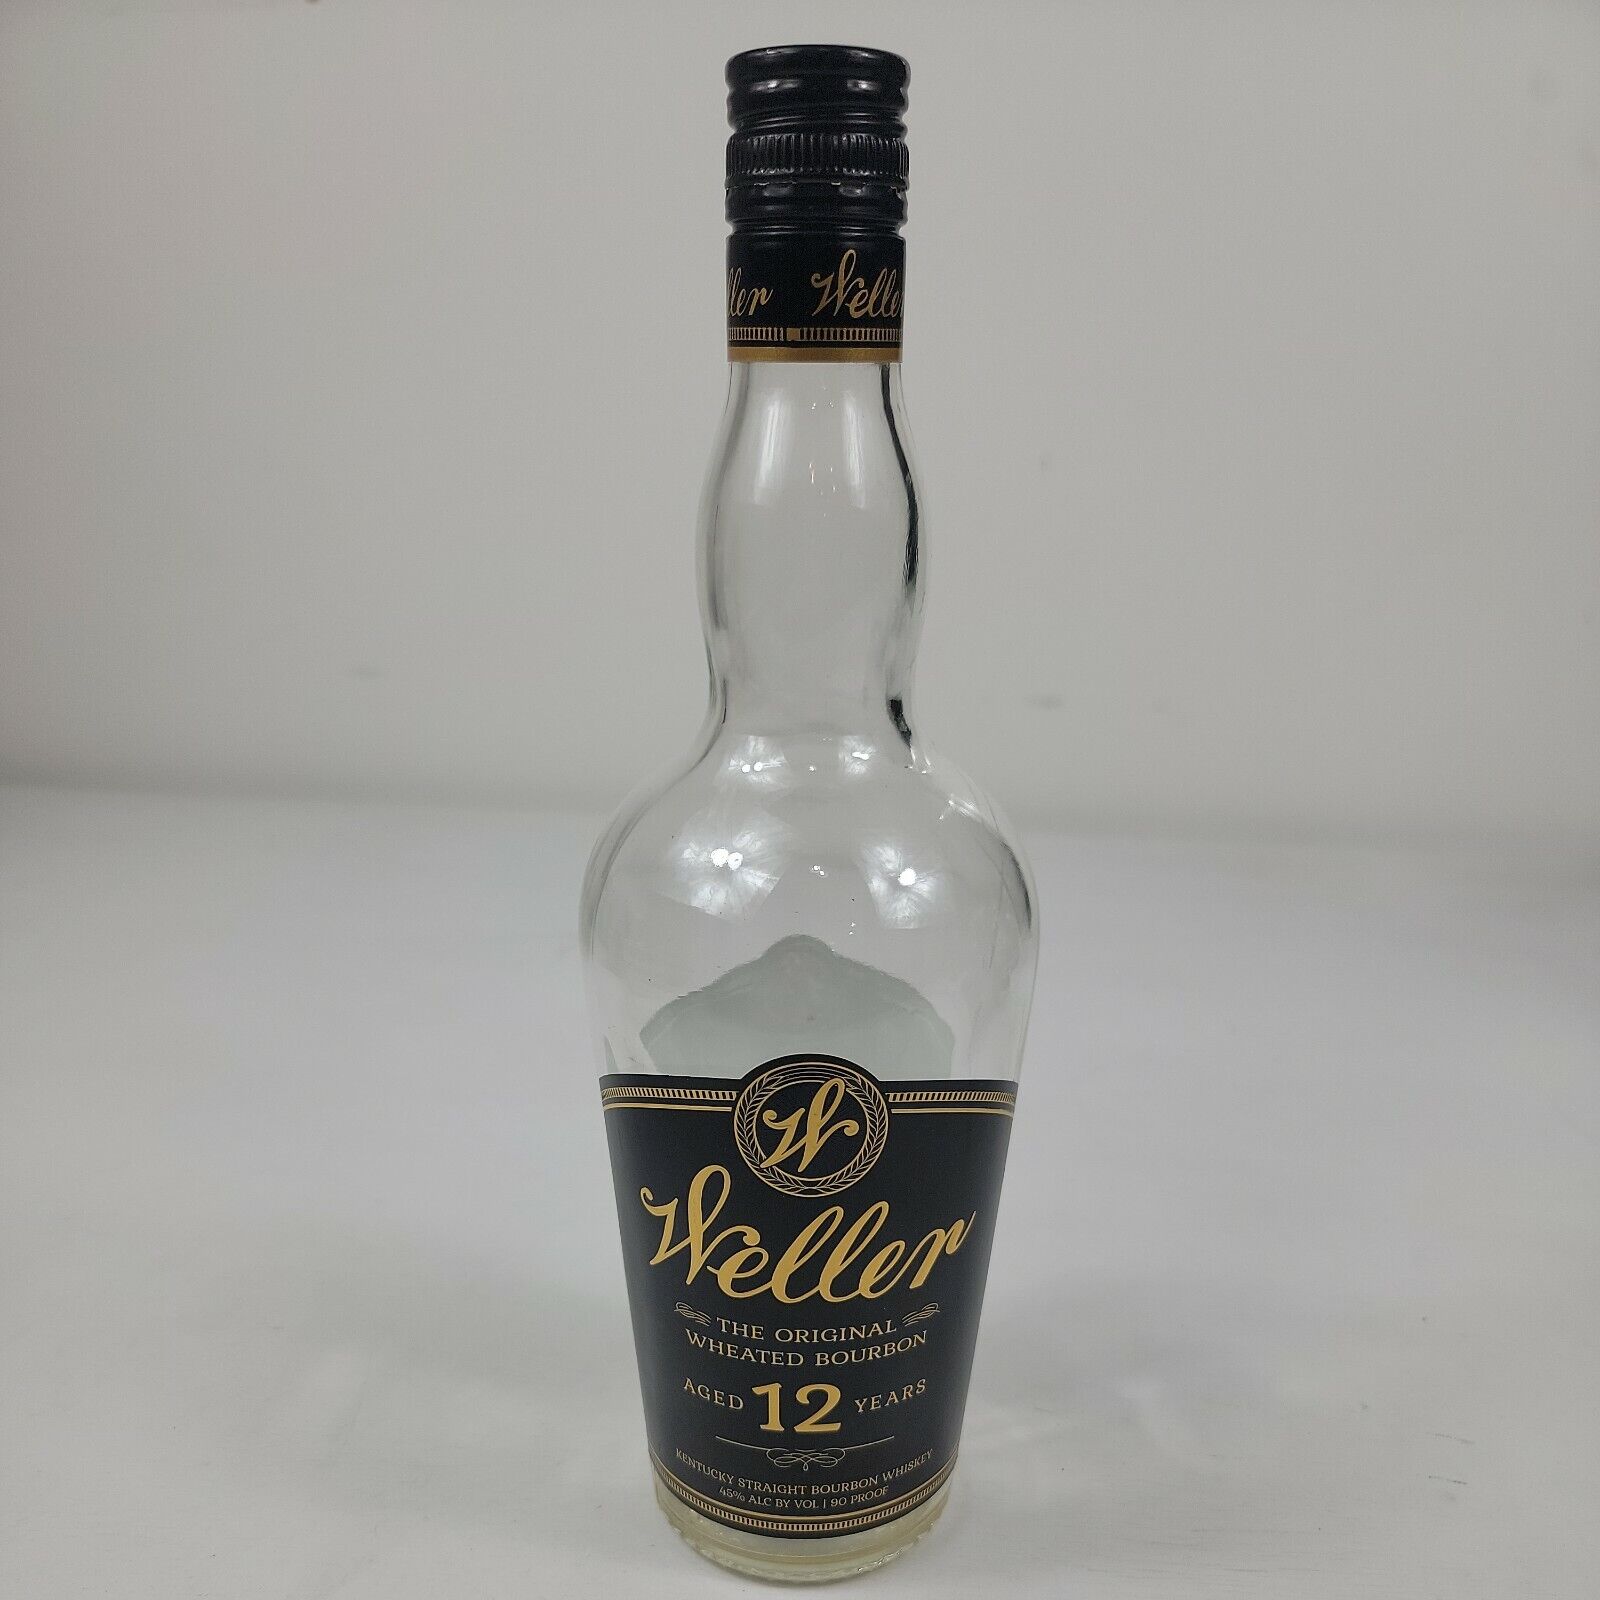  Weller 12 Year Empty Kentucky Bourbon Bottle 1 liter